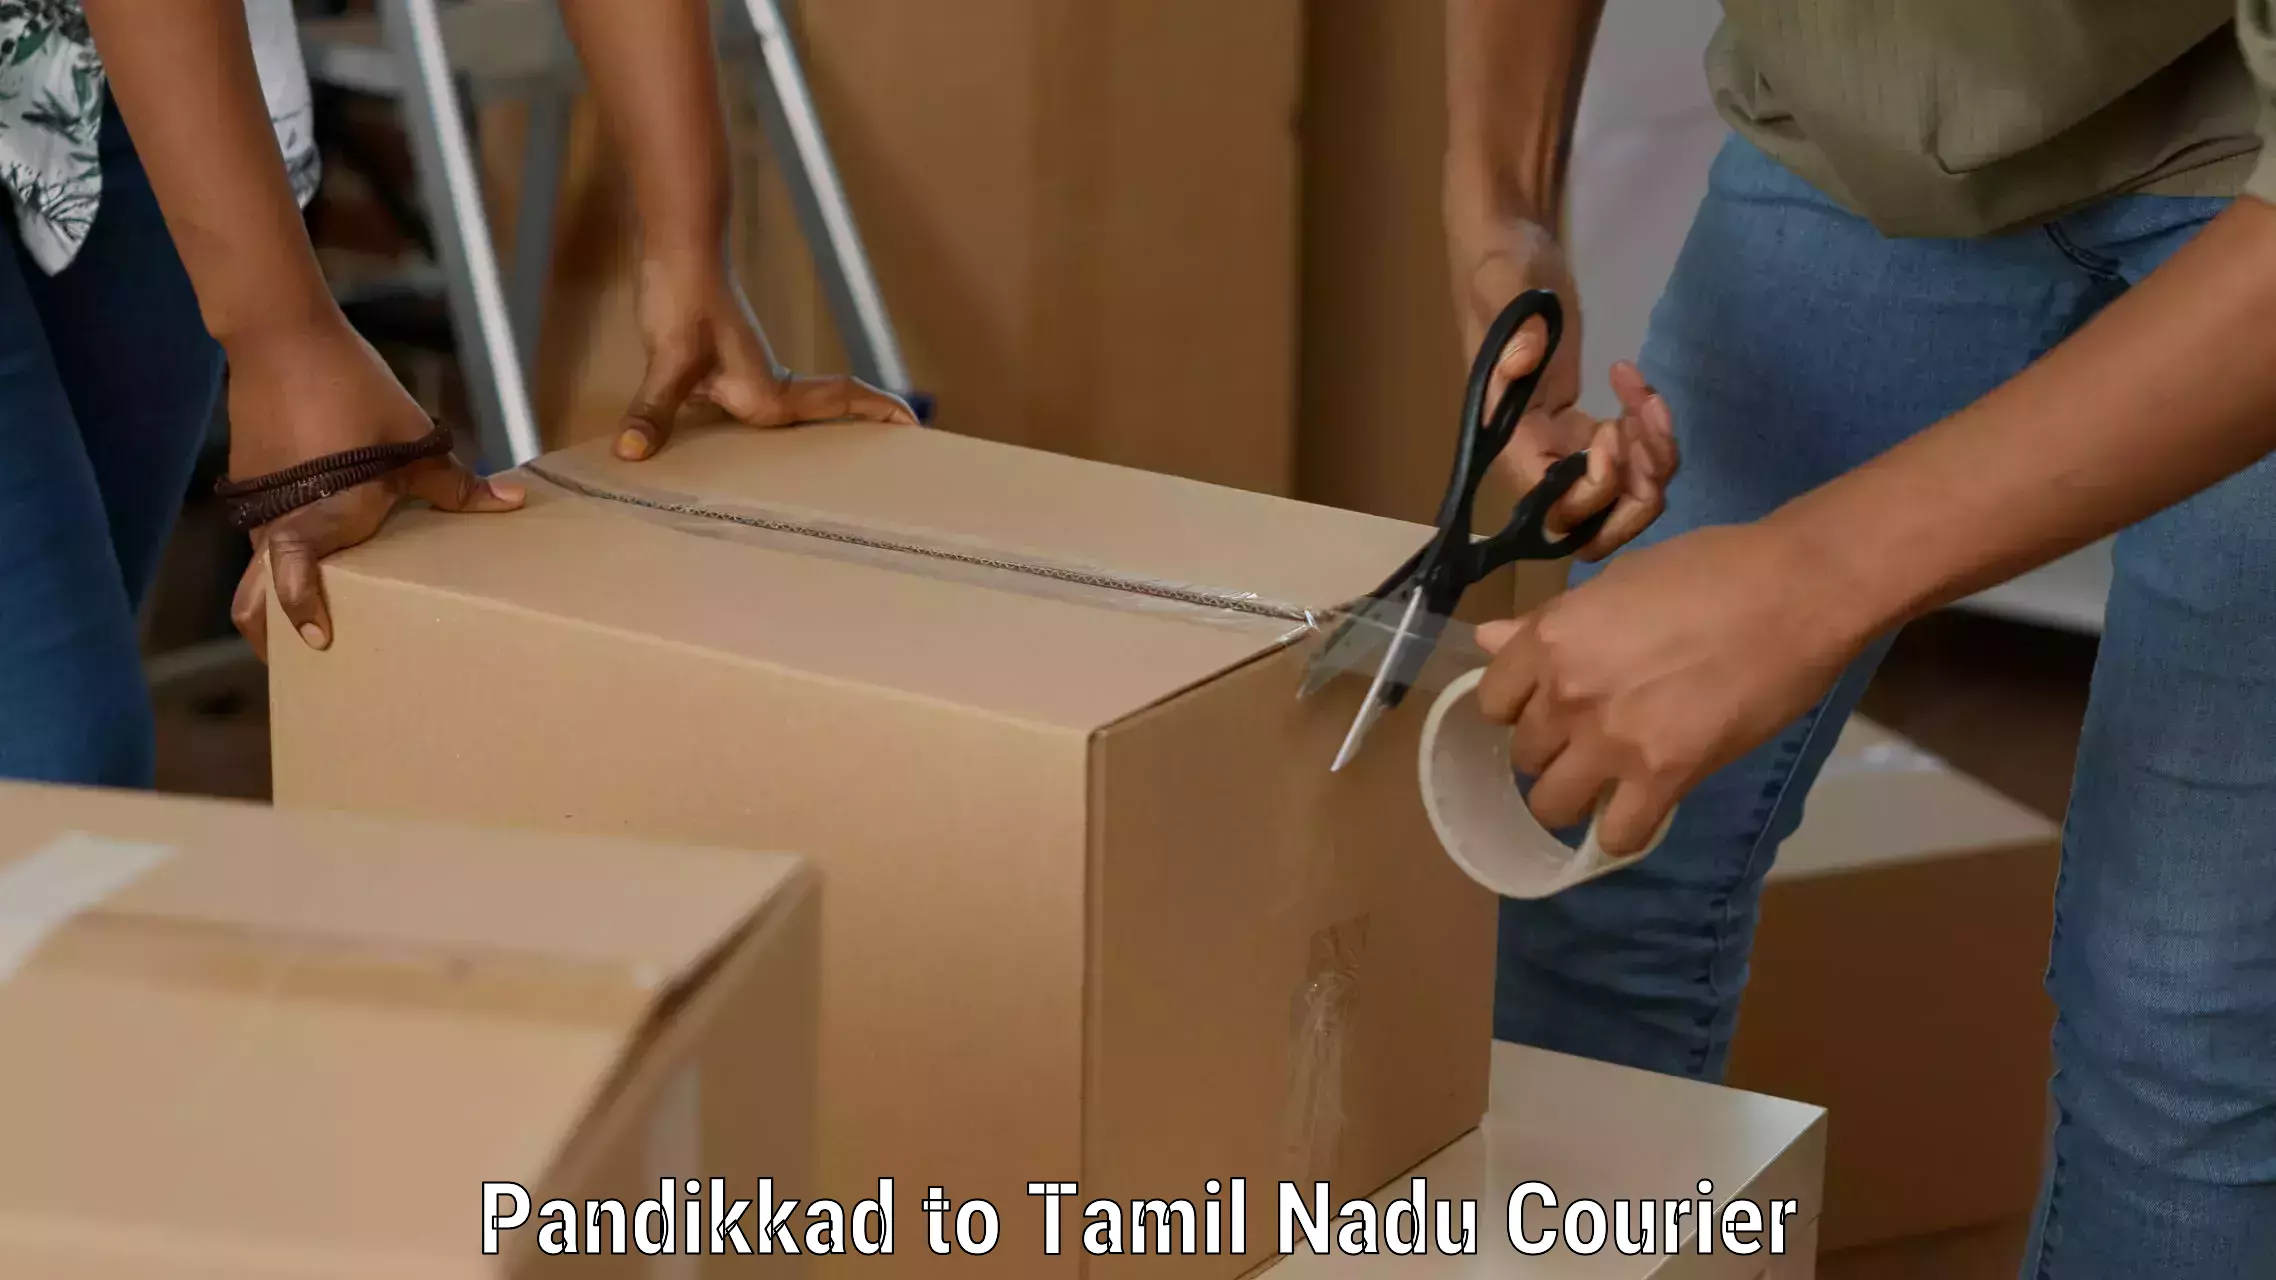 Budget-friendly shipping Pandikkad to Thiruvadanai